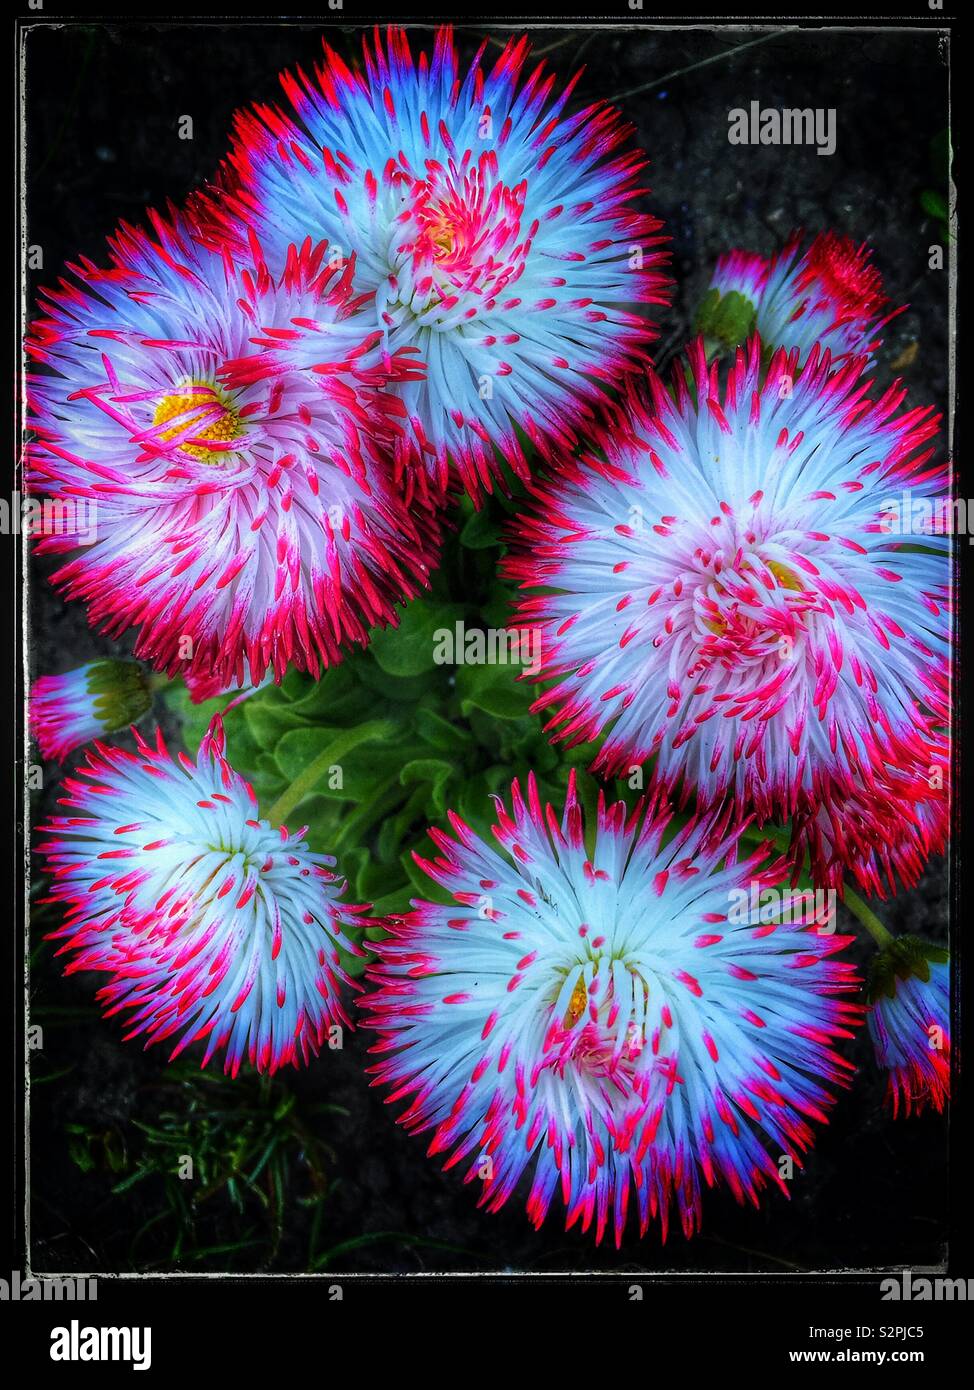 Leuchtende Wirkung von Rosa und Weiße Bellis Perenis Blumen gefiltert. Mitglied der Familie. Stockfoto